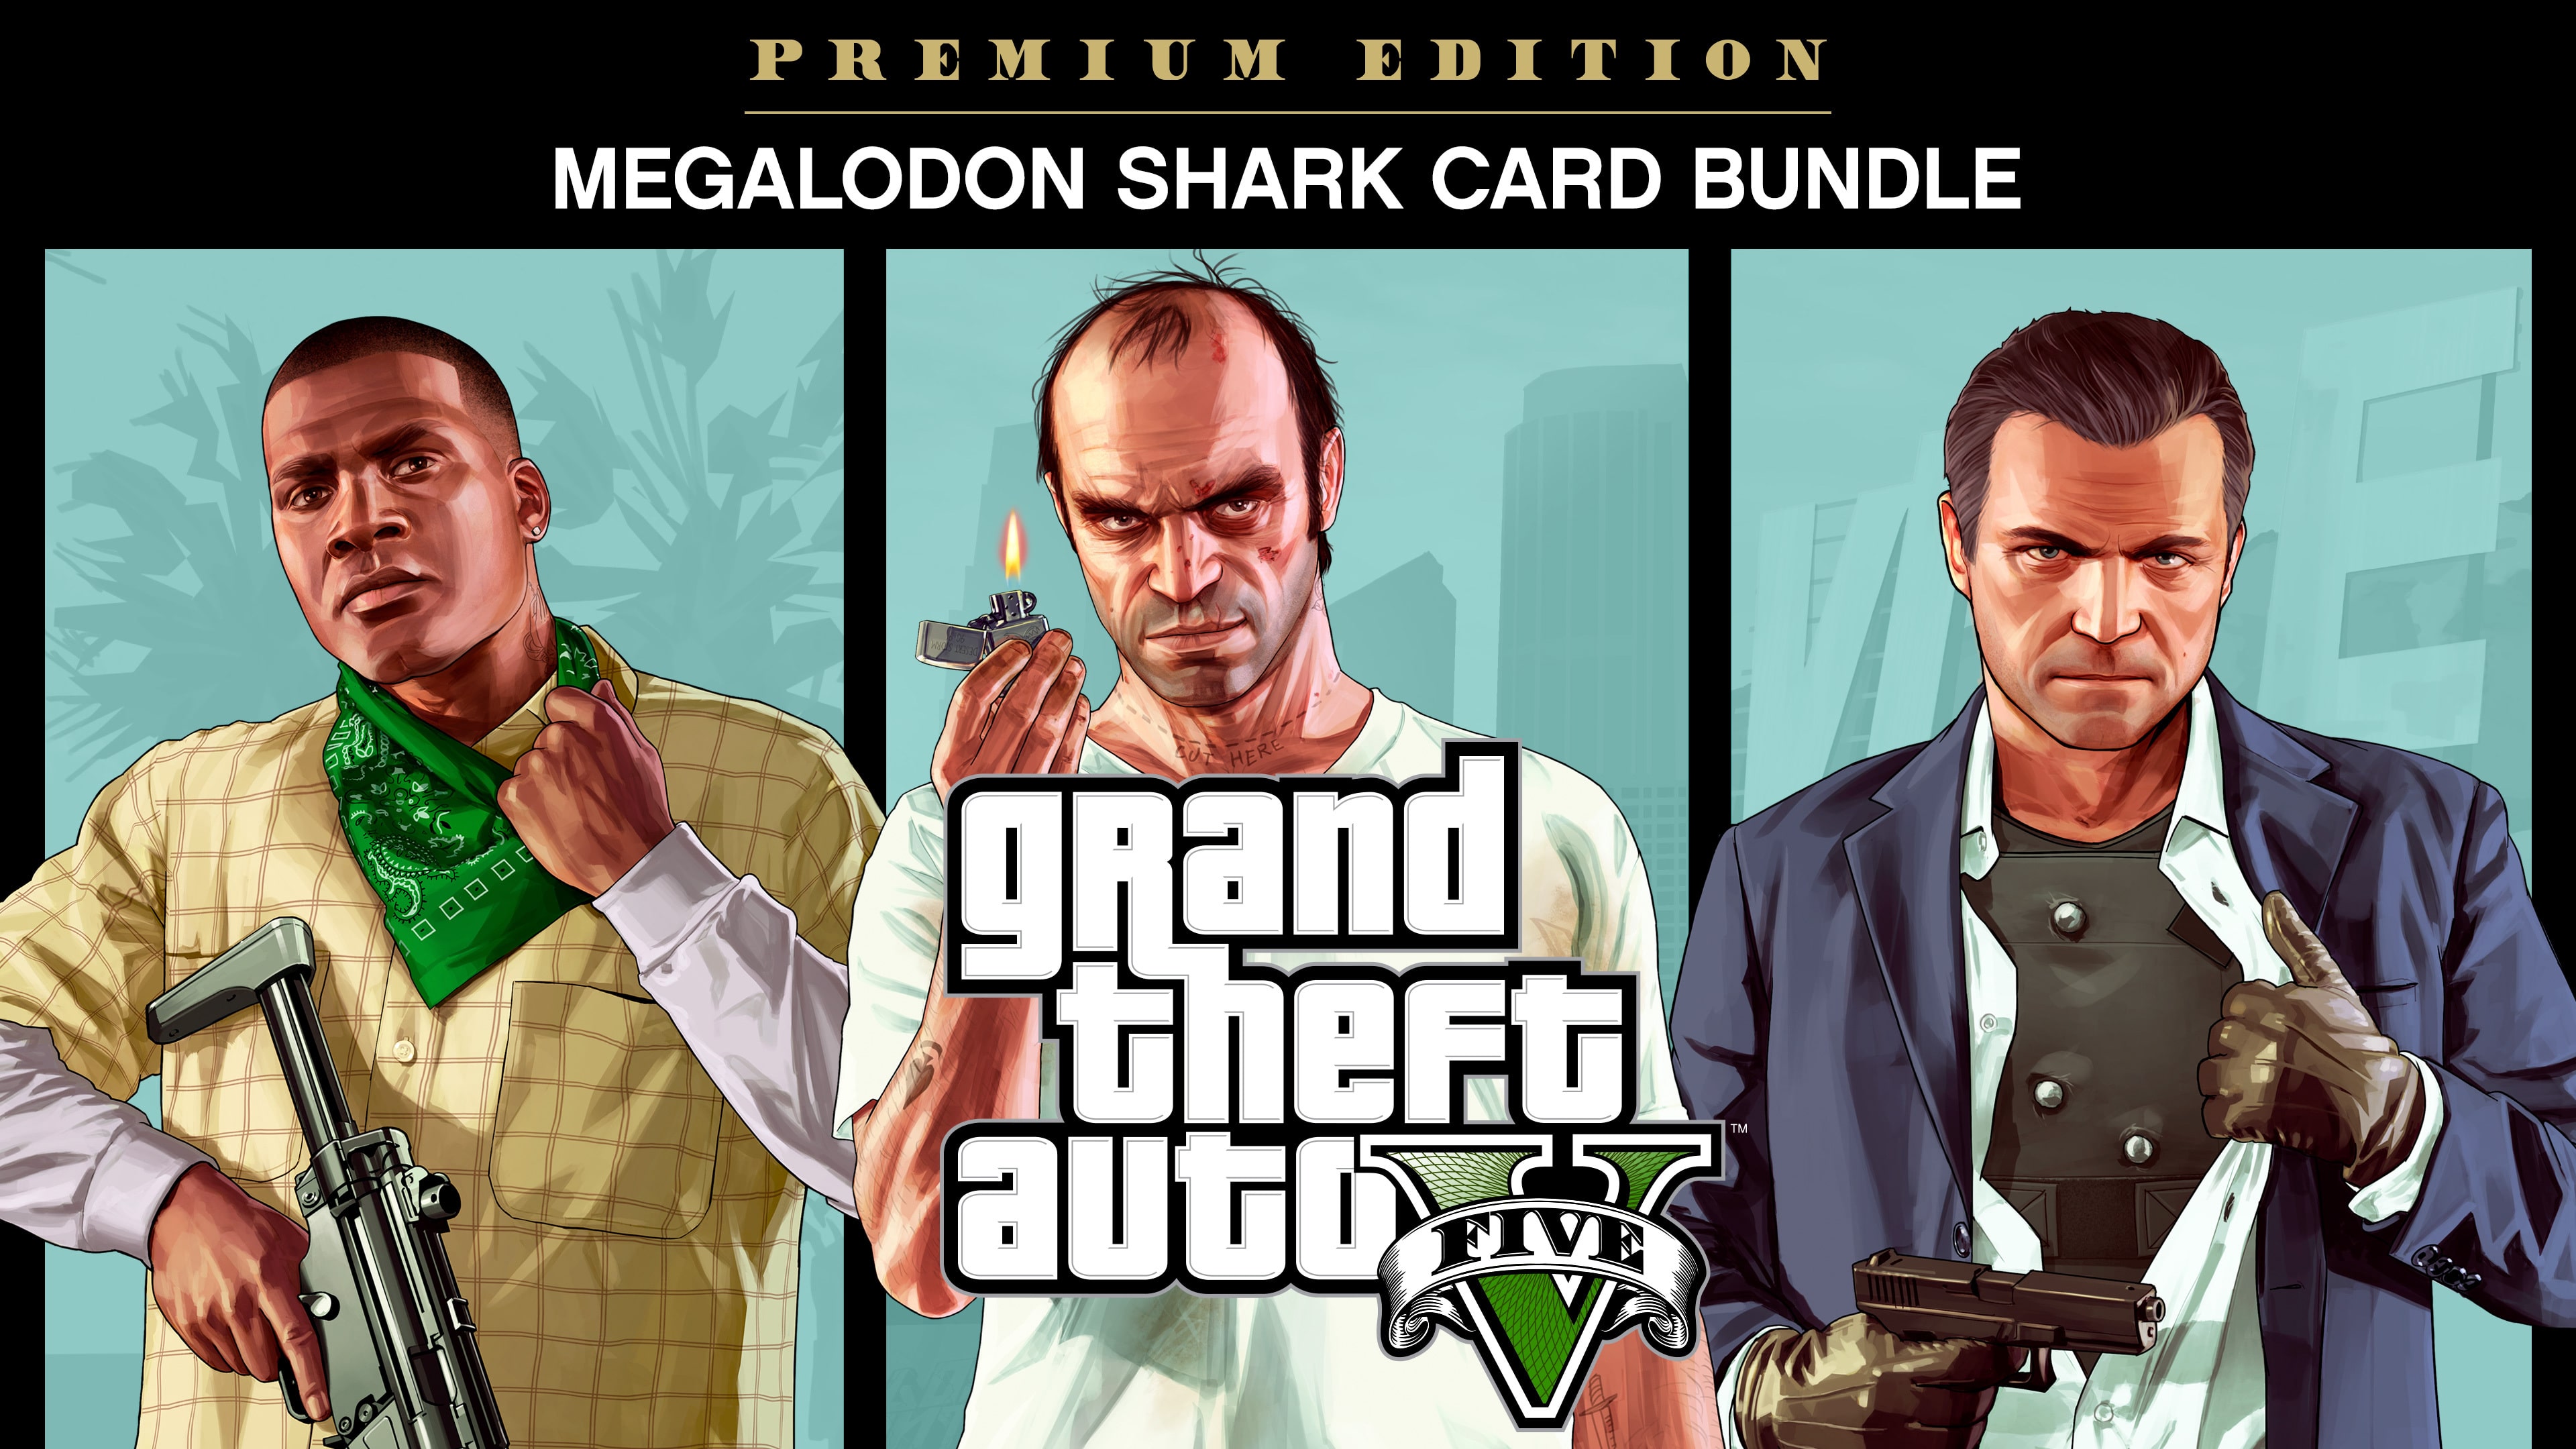 Lote de Grand Theft Auto V: Premium Edition y tarjeta Tiburón megalodón